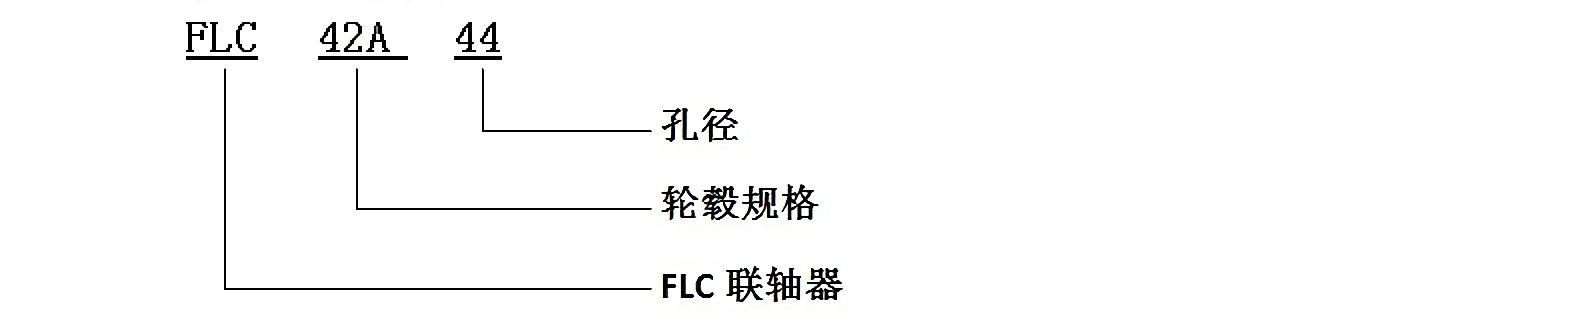 FLC表示方法.png